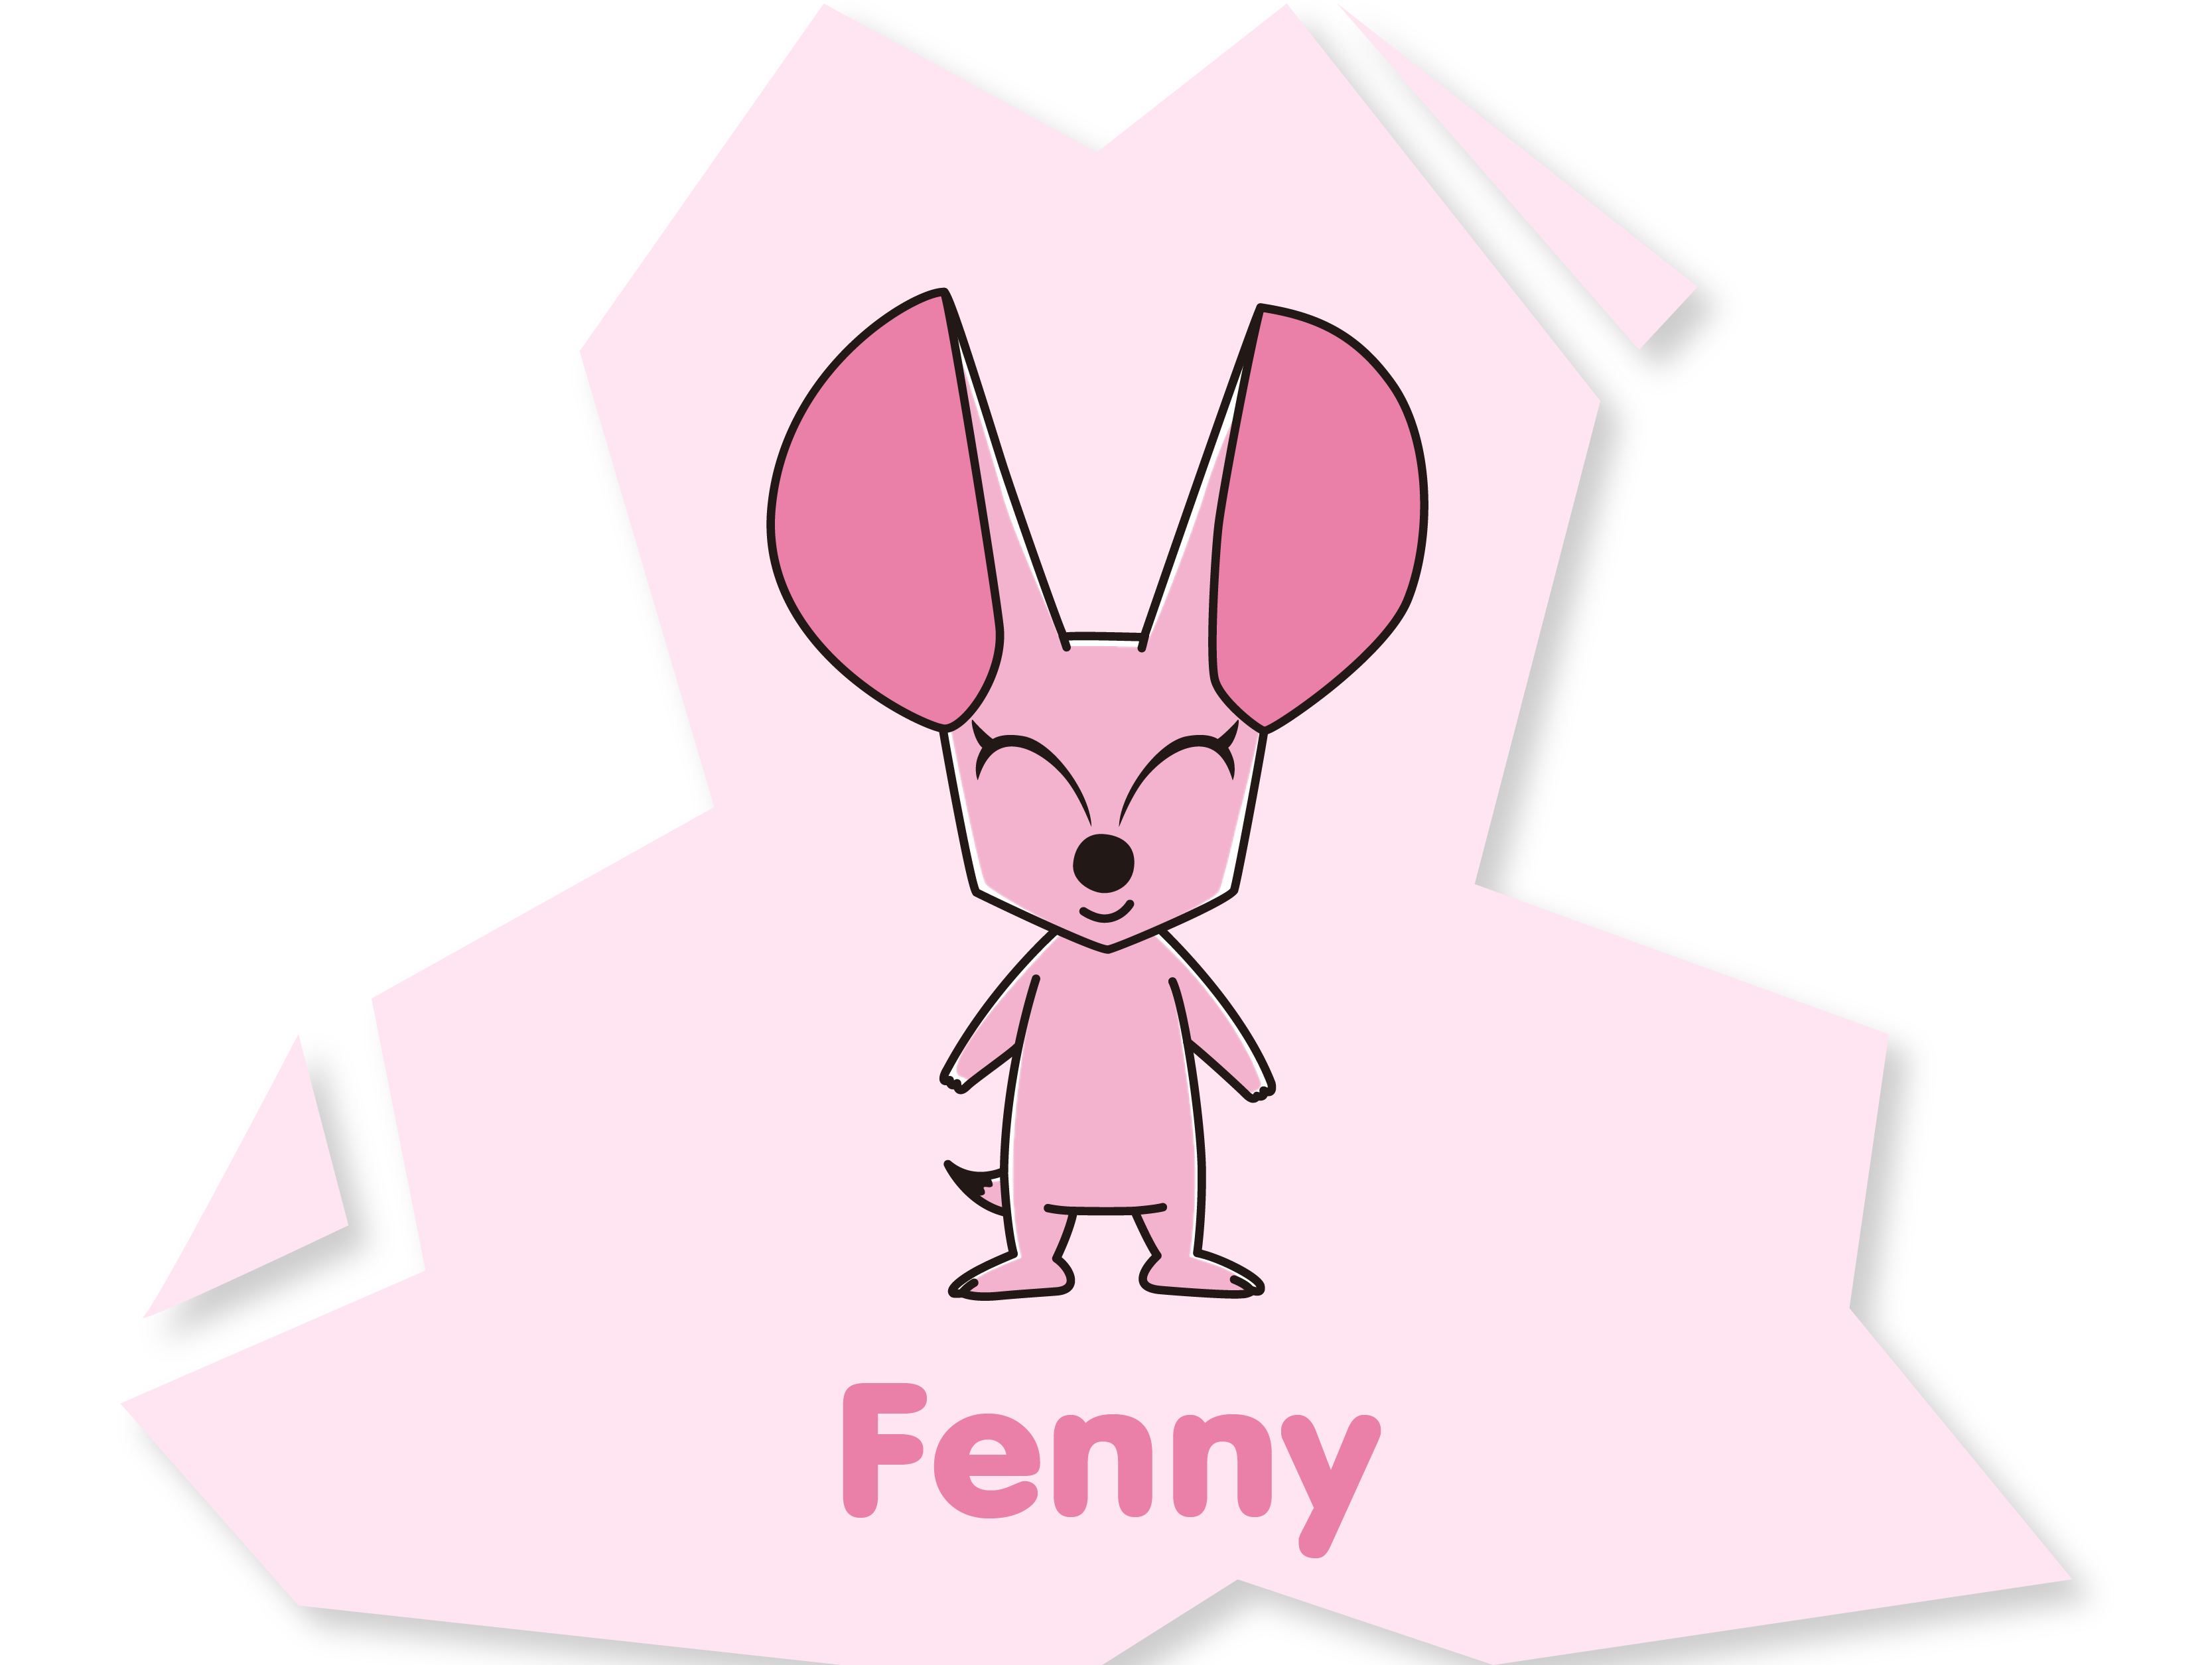 Fenny